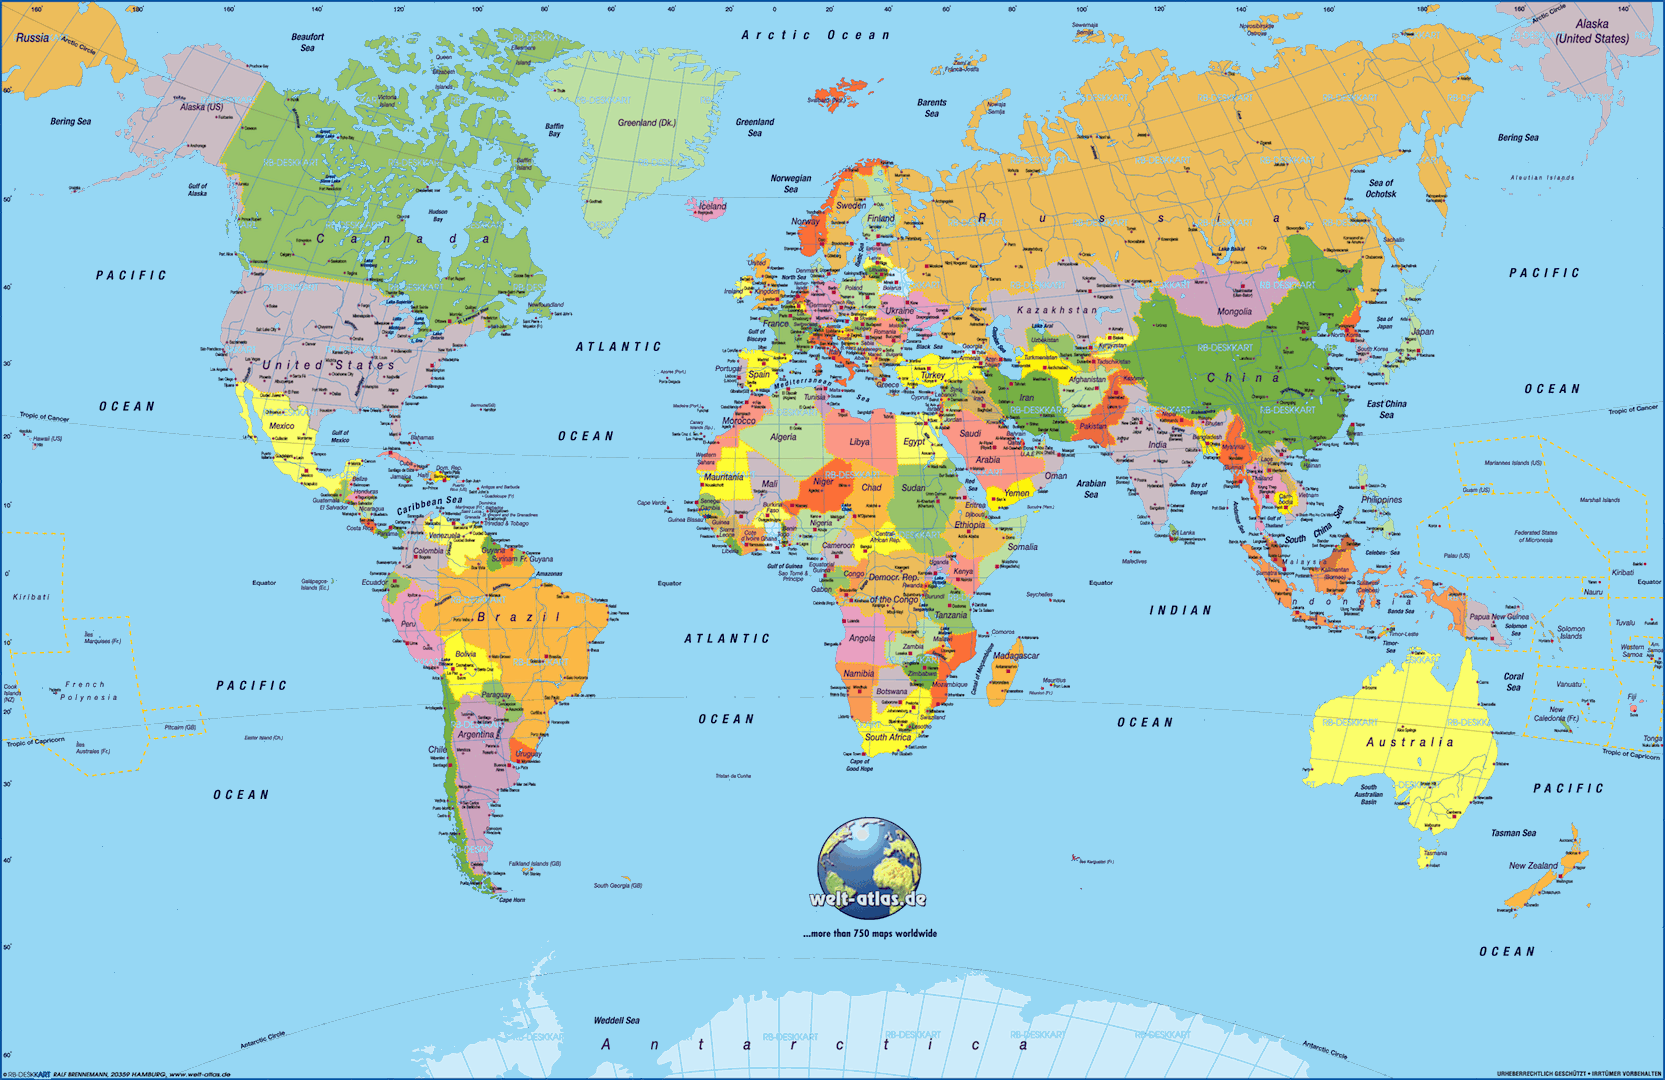 نقشه دنیا با کیفیت بالا